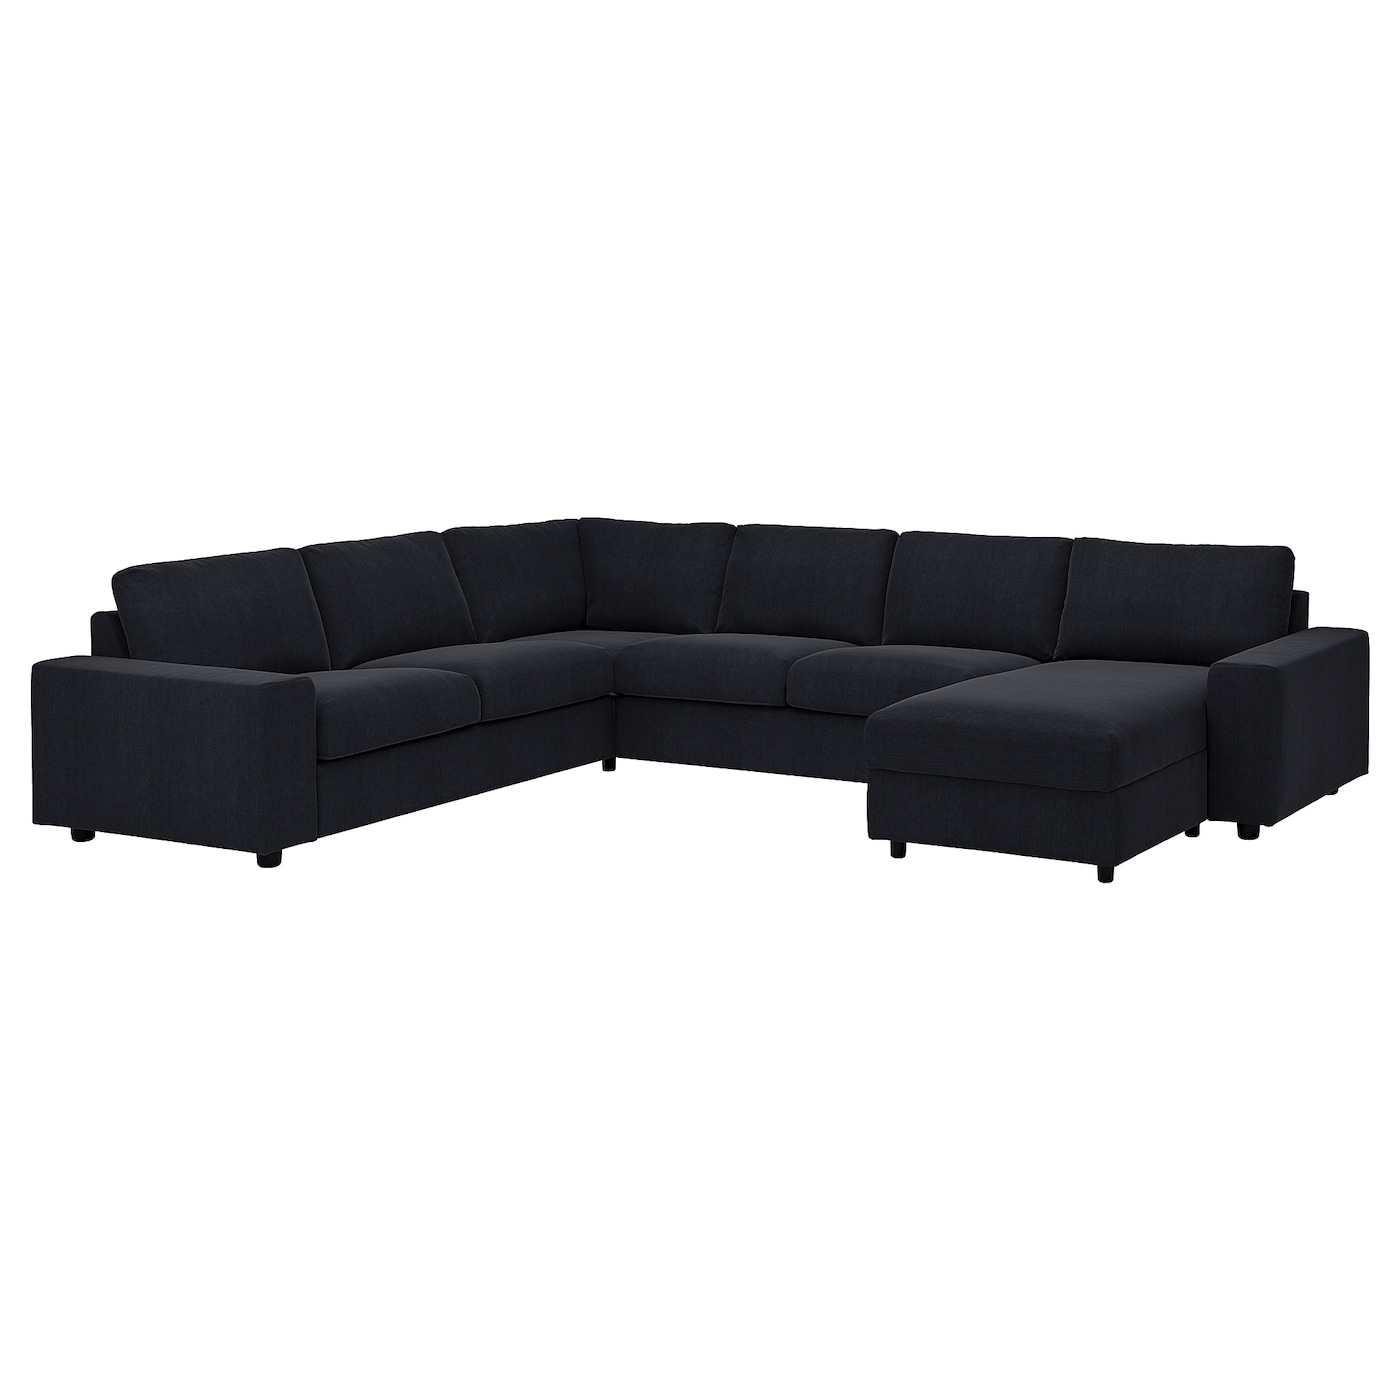 ВИМЛЕ Диван угловой, 5-местный. диван+диван, с широкими подлокотниками/Saxemara черно-синий VIMLE IKEA угловой диван fortune шоколадный